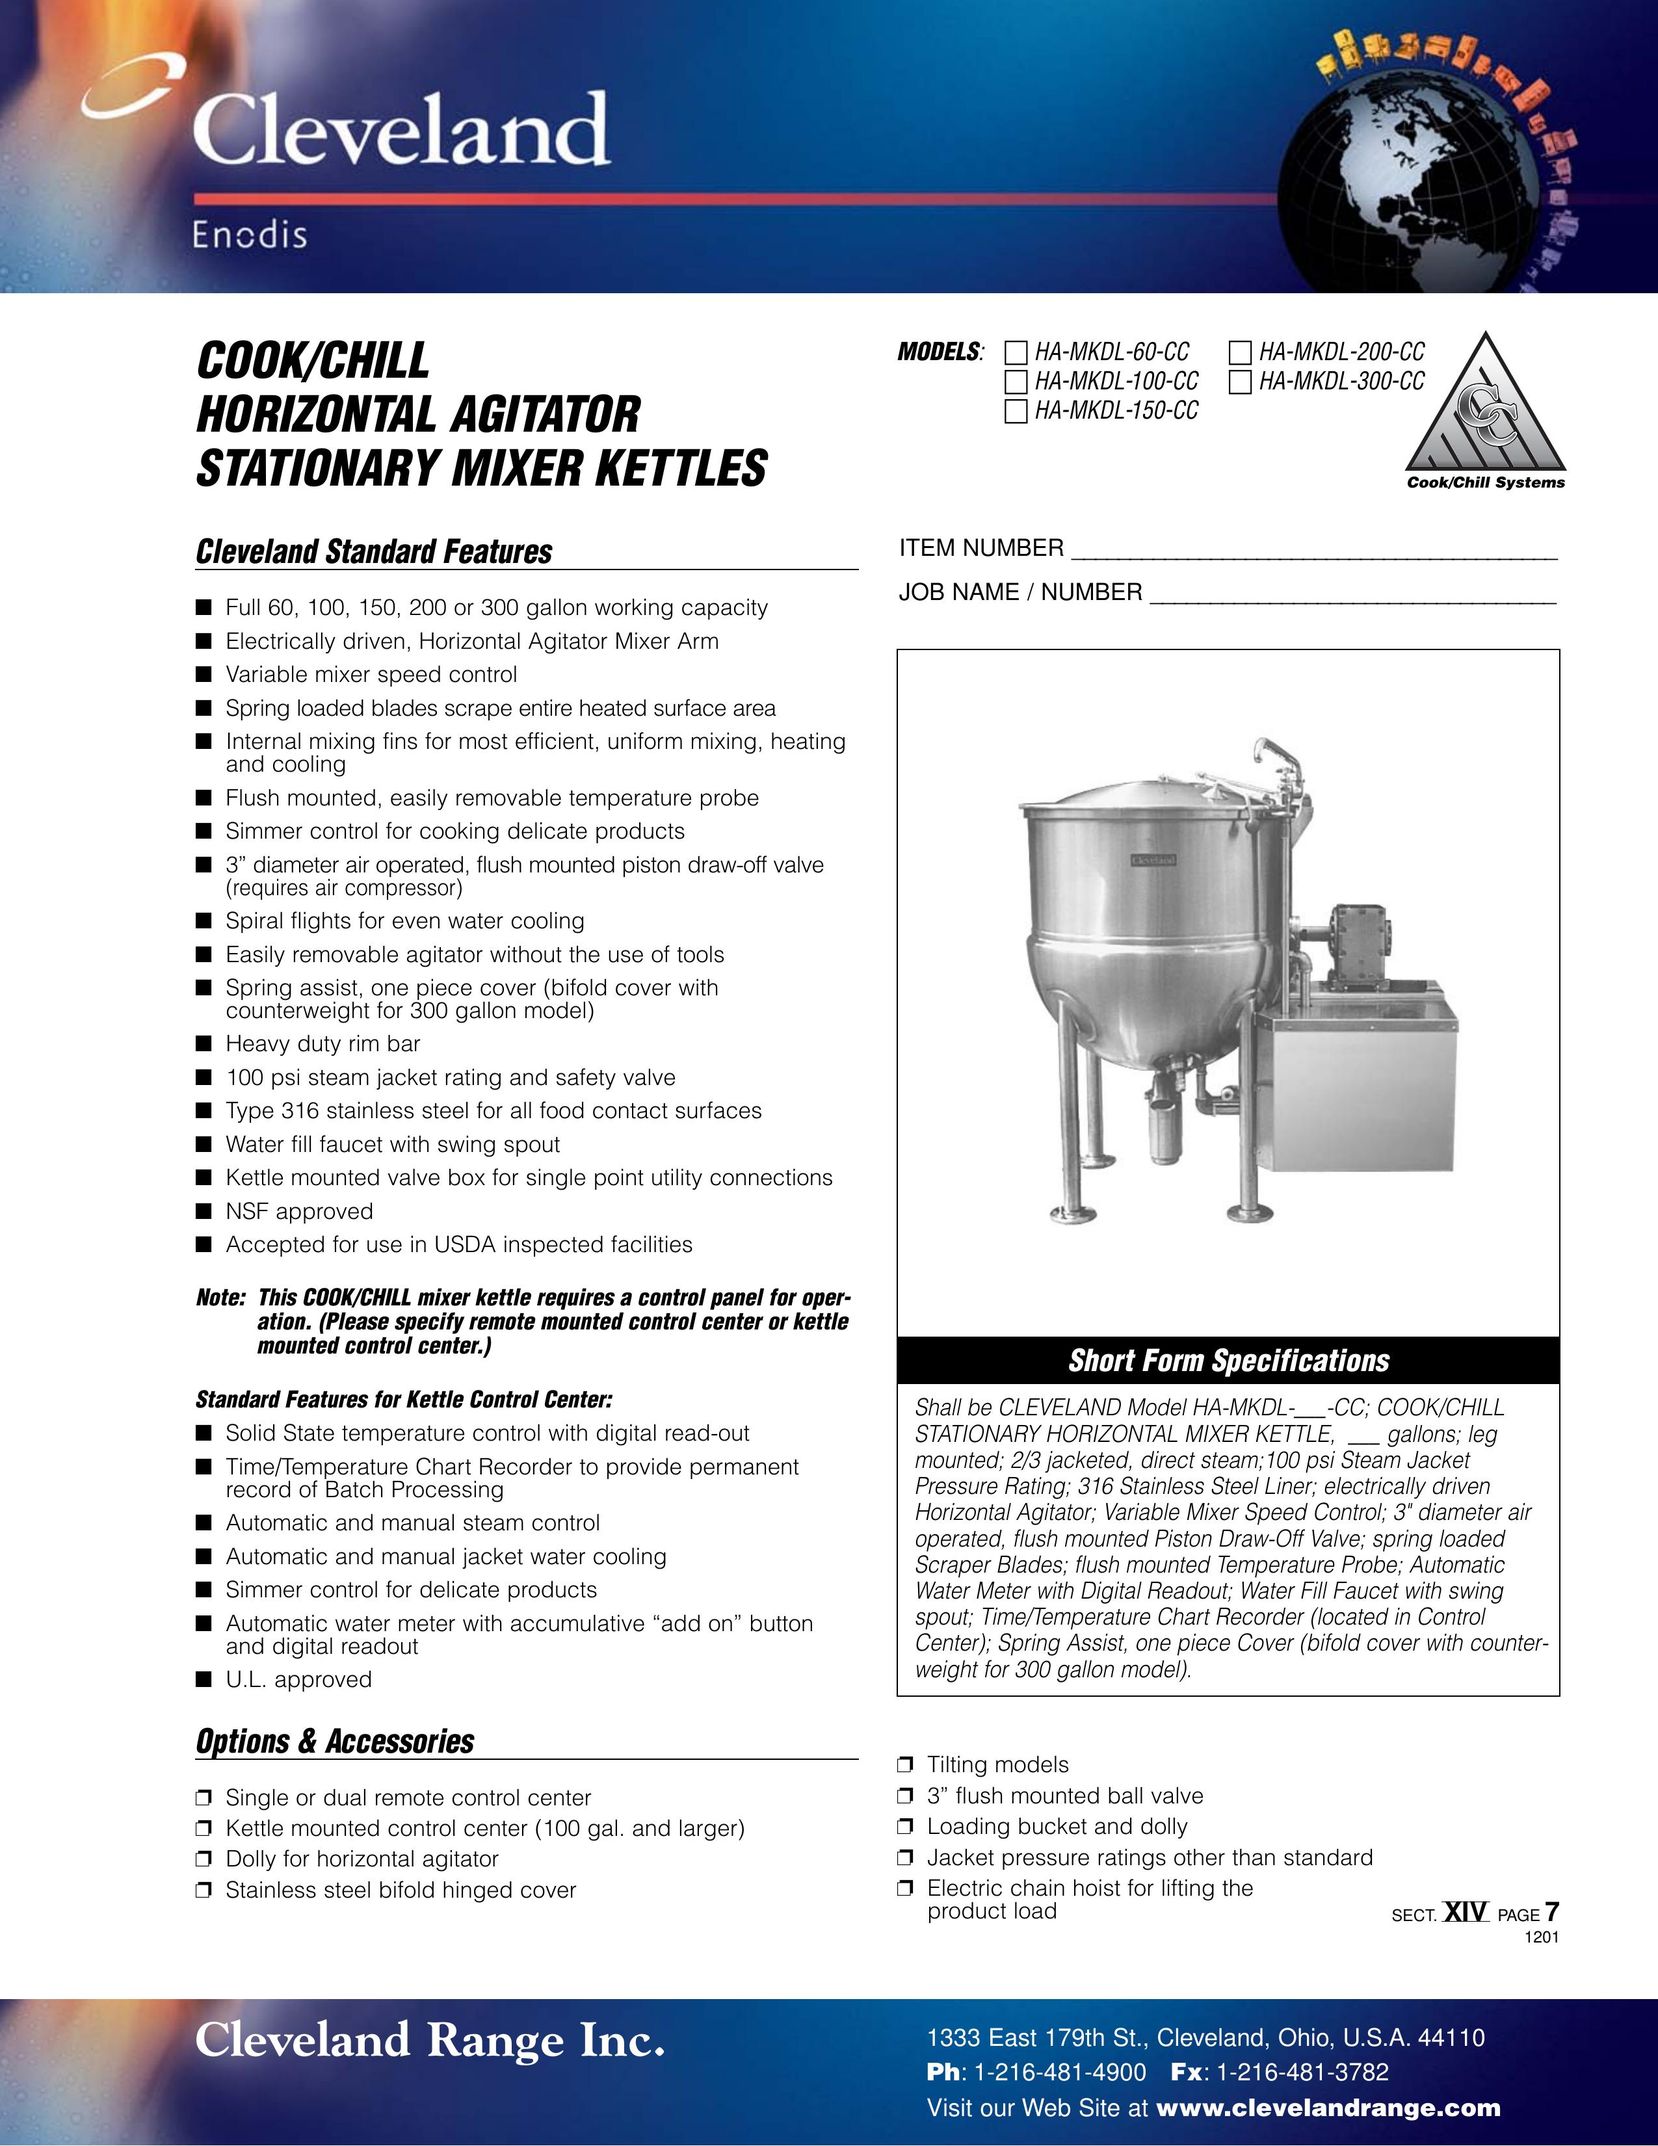 Cleveland Range HA-MKDL-300-CC Hot Beverage Maker User Manual